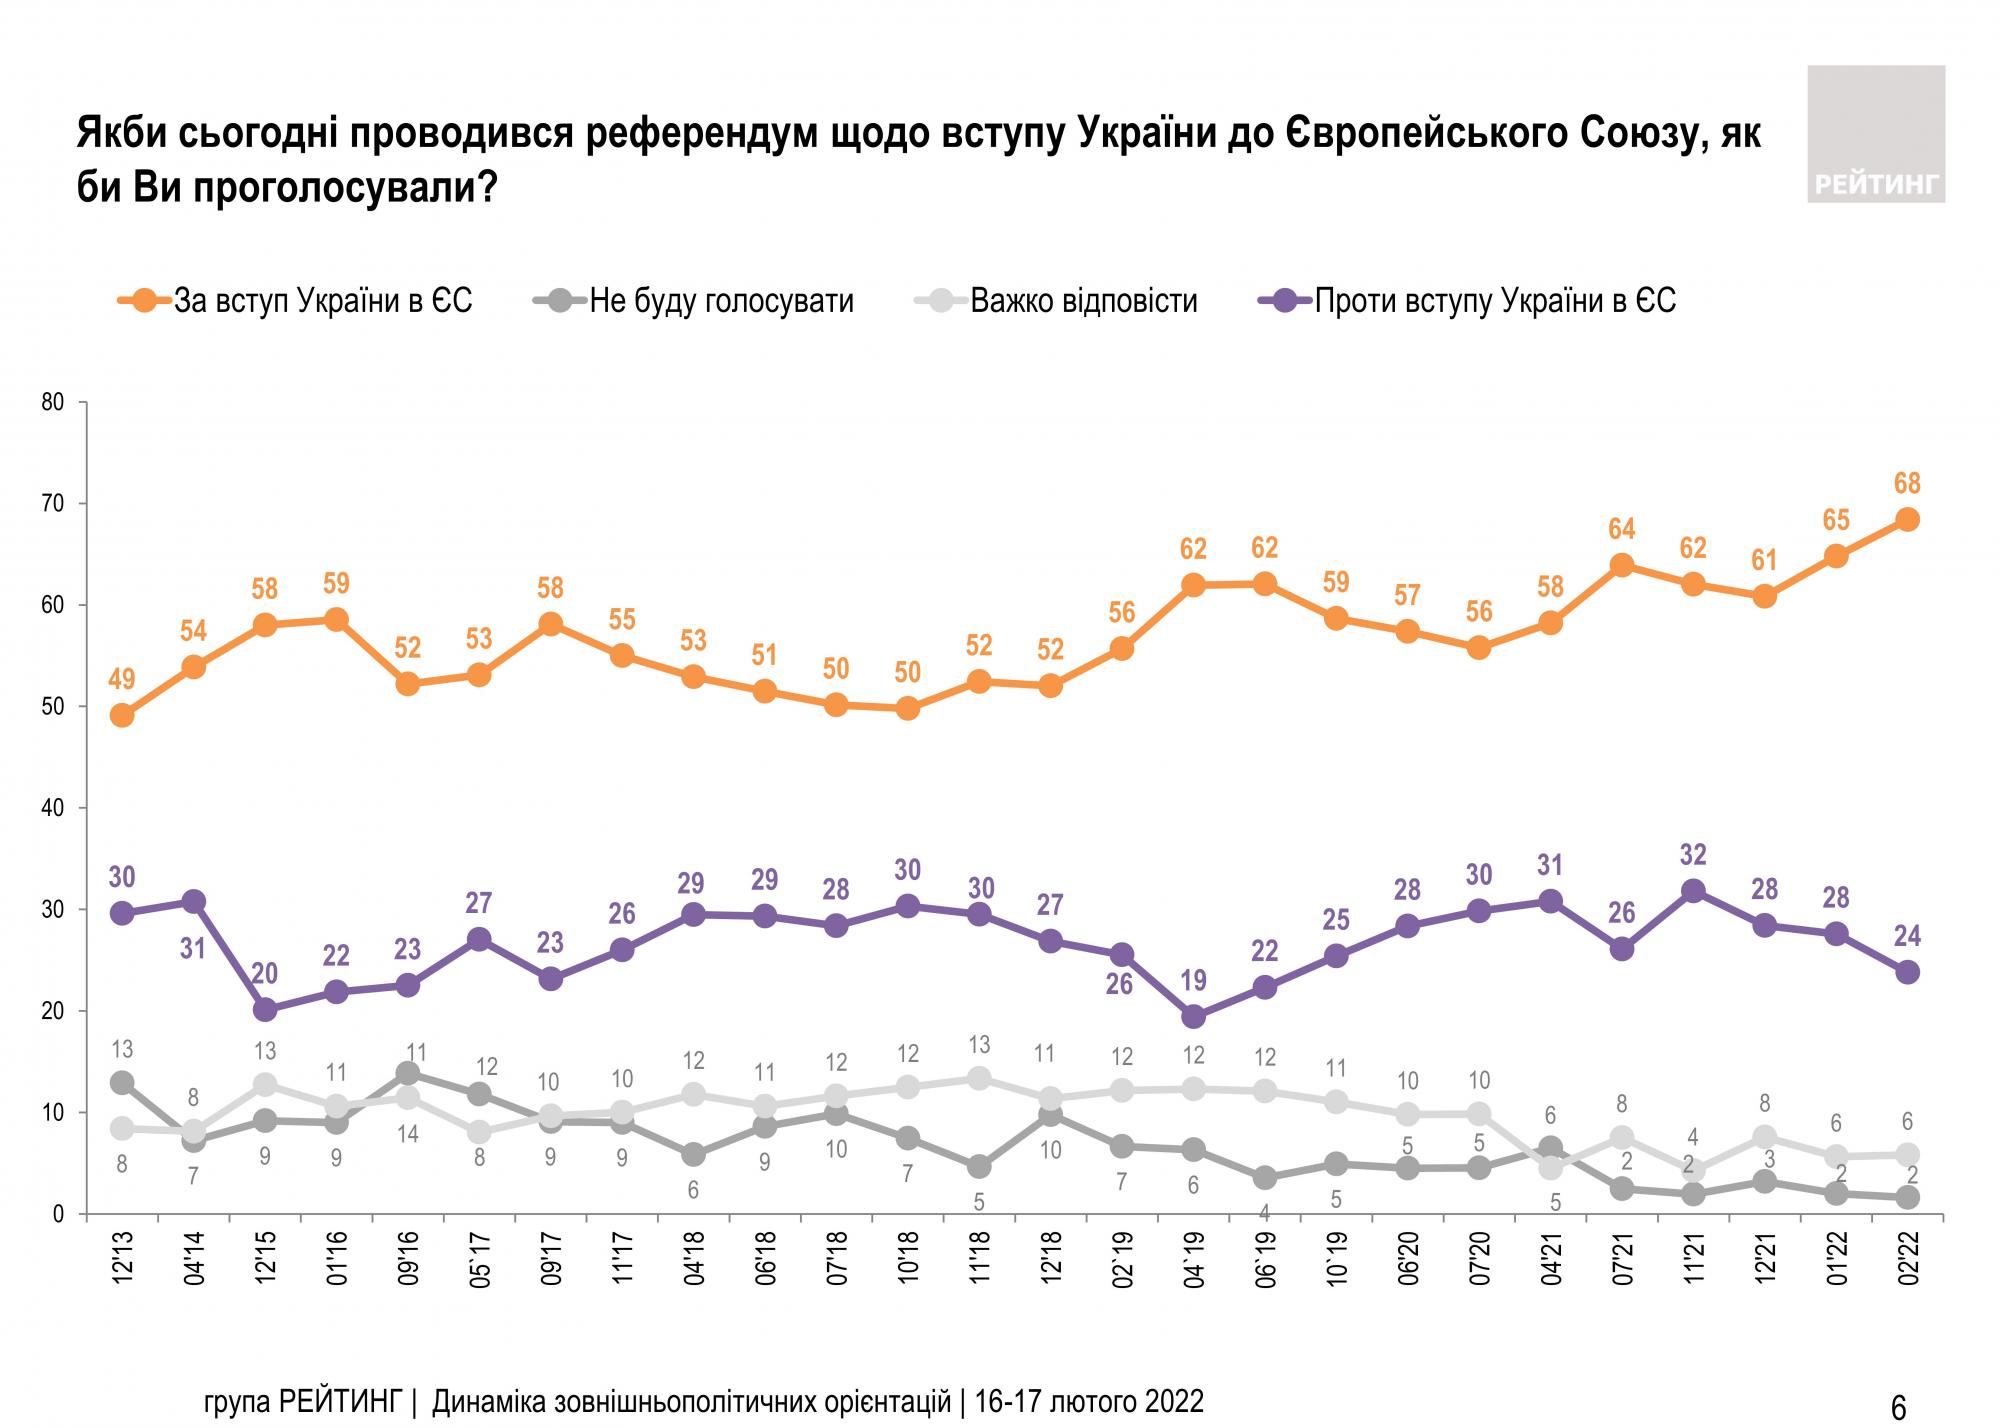 Підтримка вступу до НАТО серед українців зросла до історичного максимуму